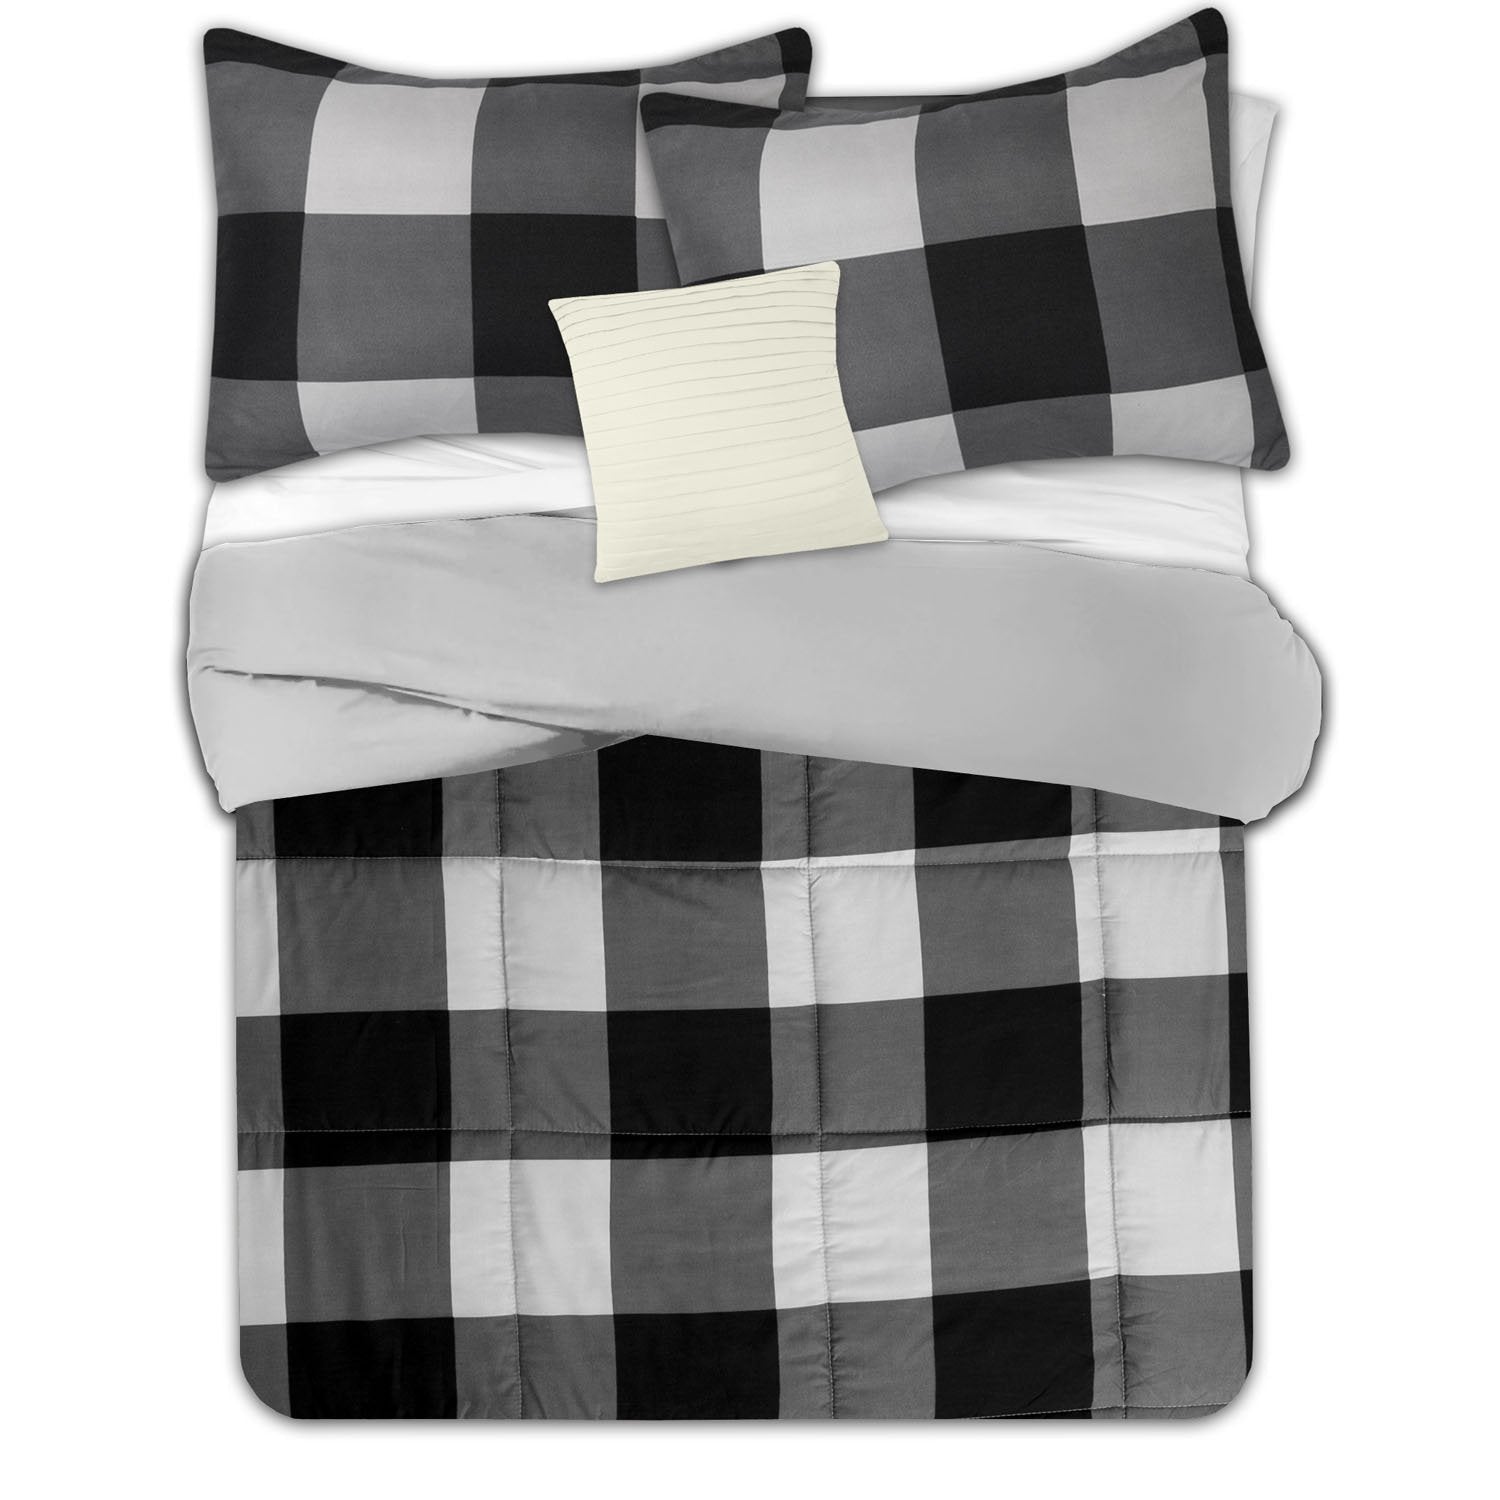 Buffalo Check 4-Piece Reversible Comforter Set Black Gray - Top